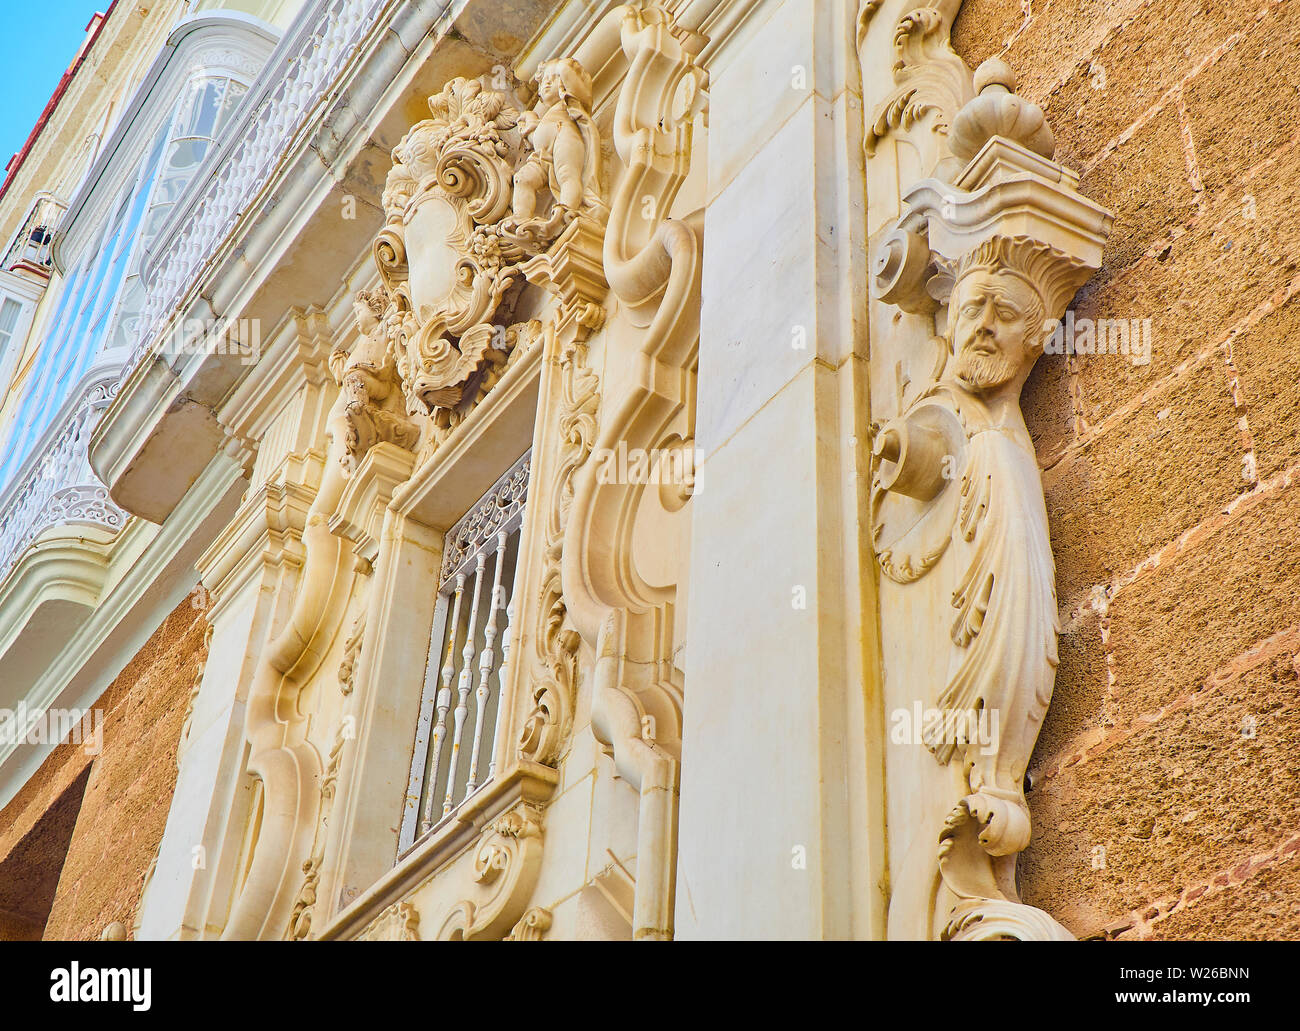 Bassorilievi in una facciata barocca. Lo stile italiano del XVII secolo. Foto Stock